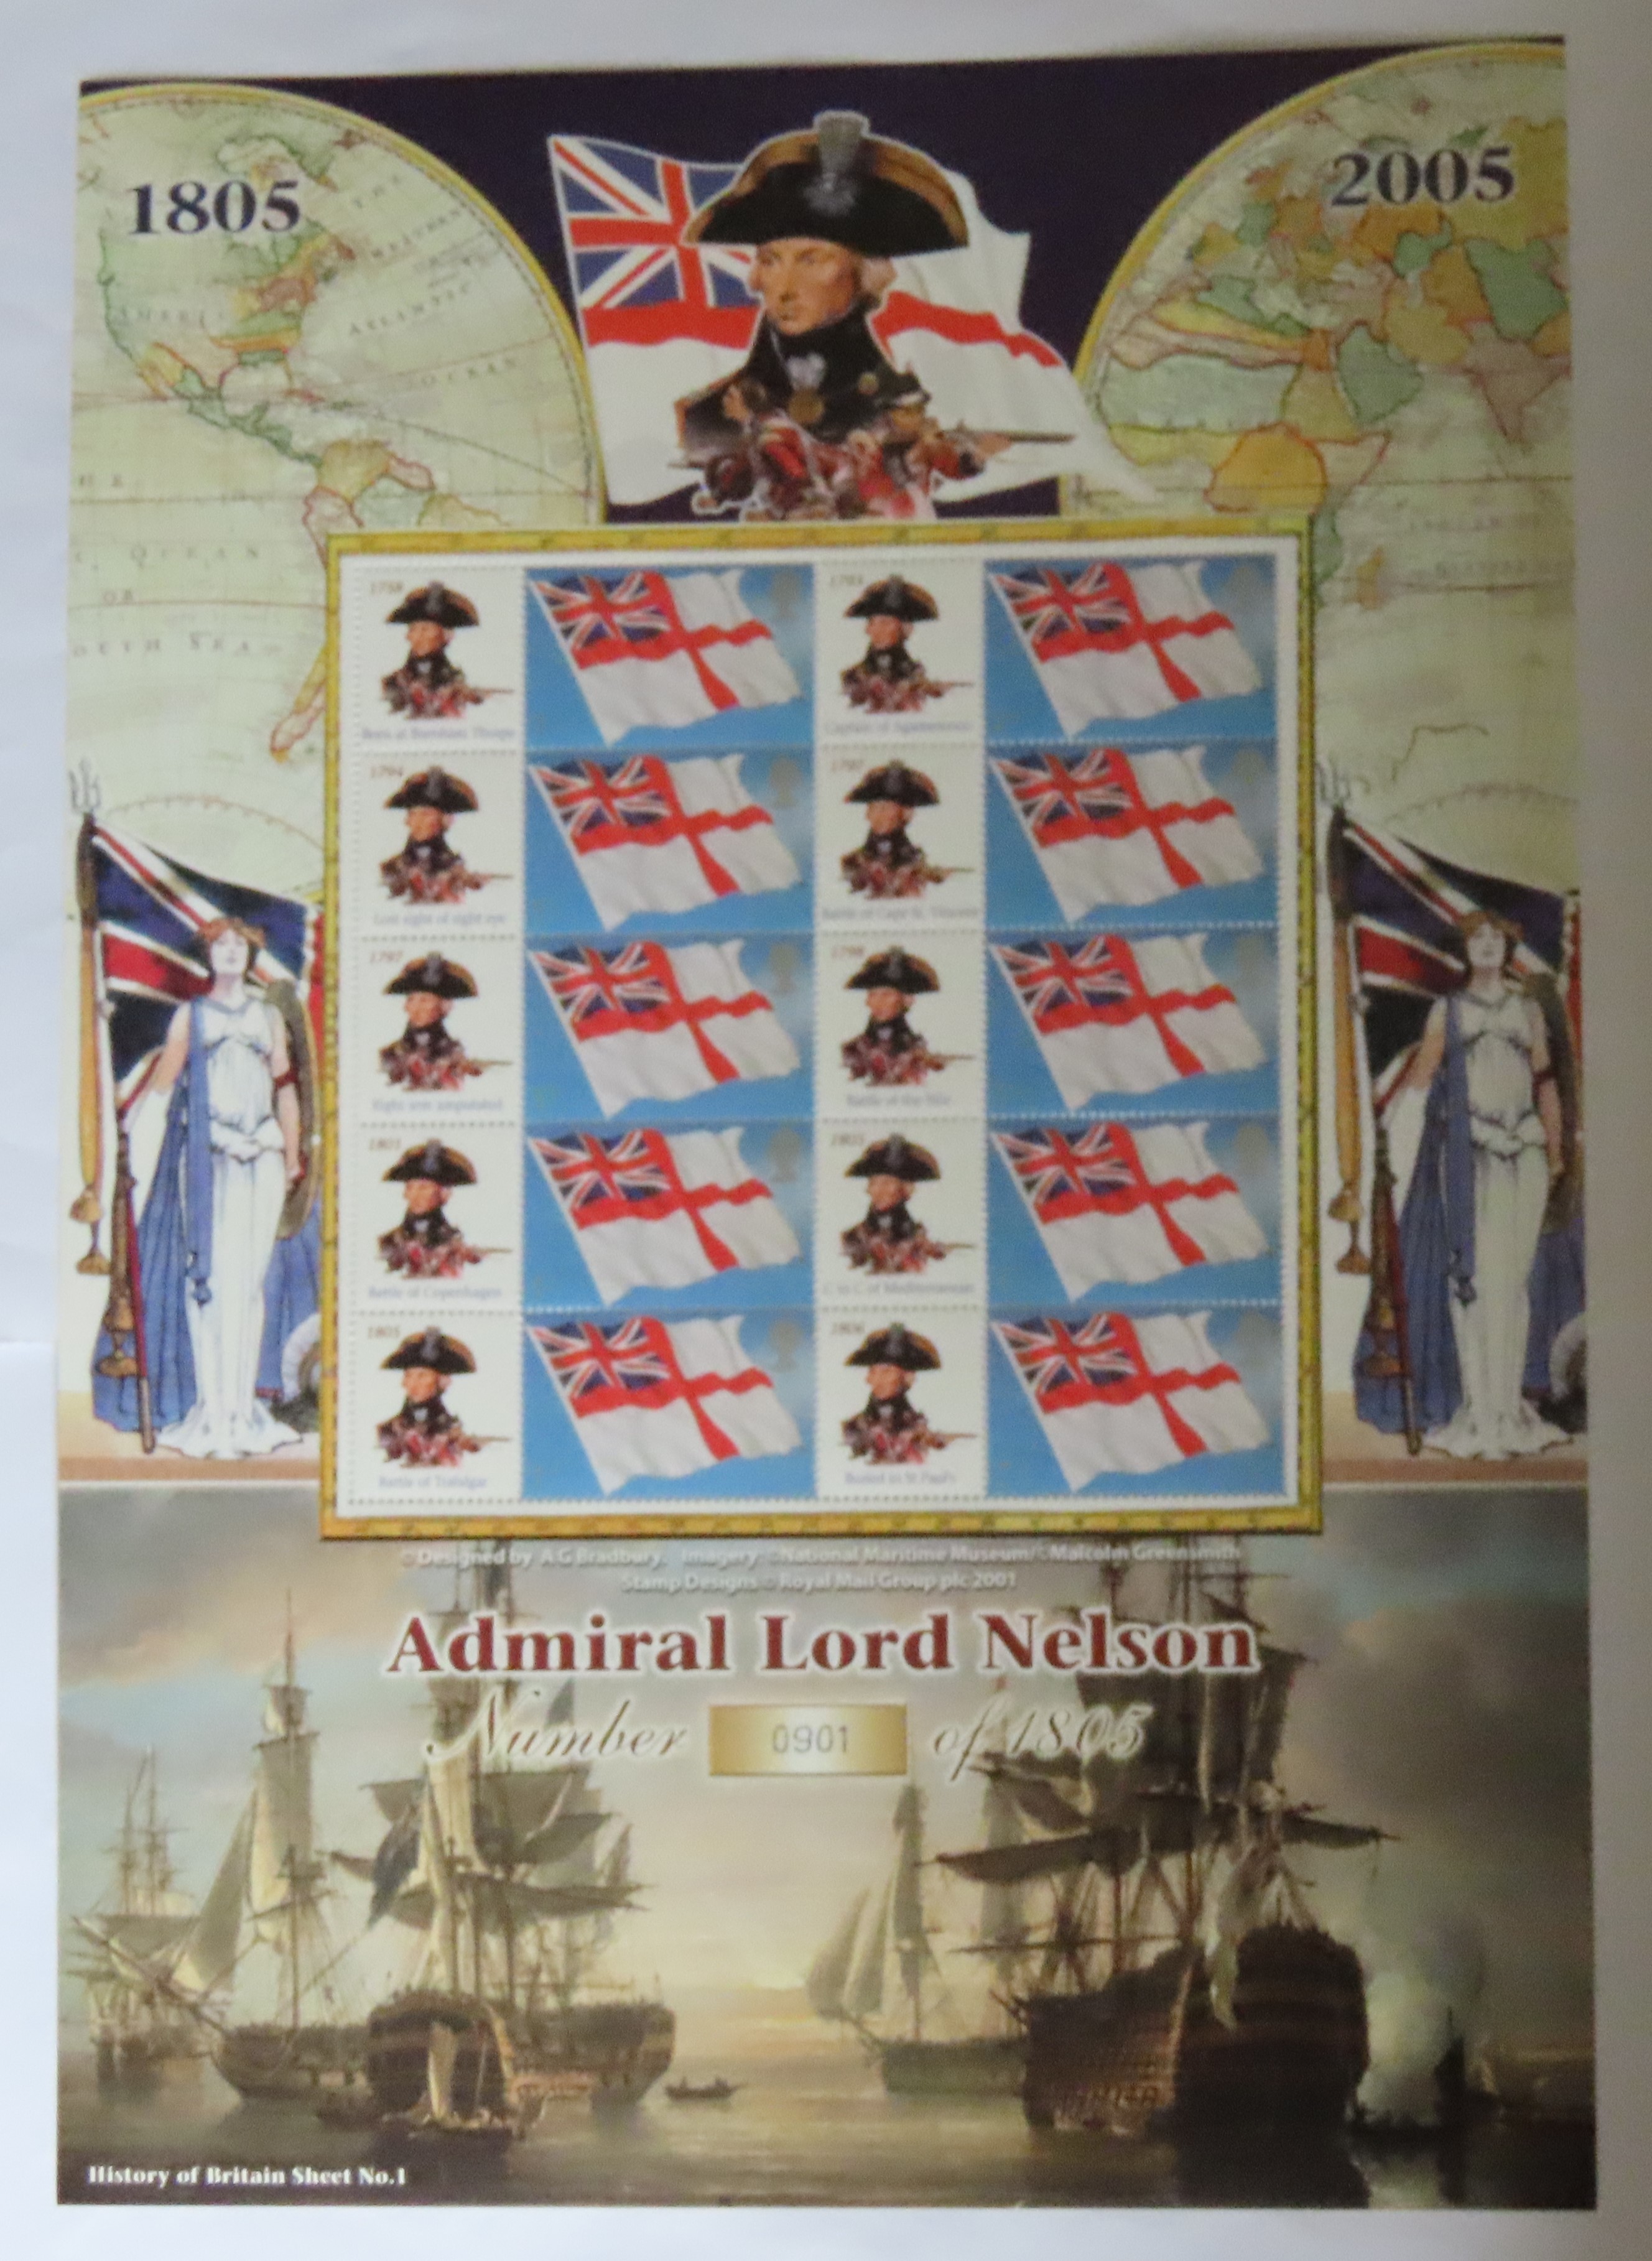 Great Britain 2005 Admiral Lord Nelson 1805-2005 Bradbury / Royal Mail 'History of Britain' Sheet No